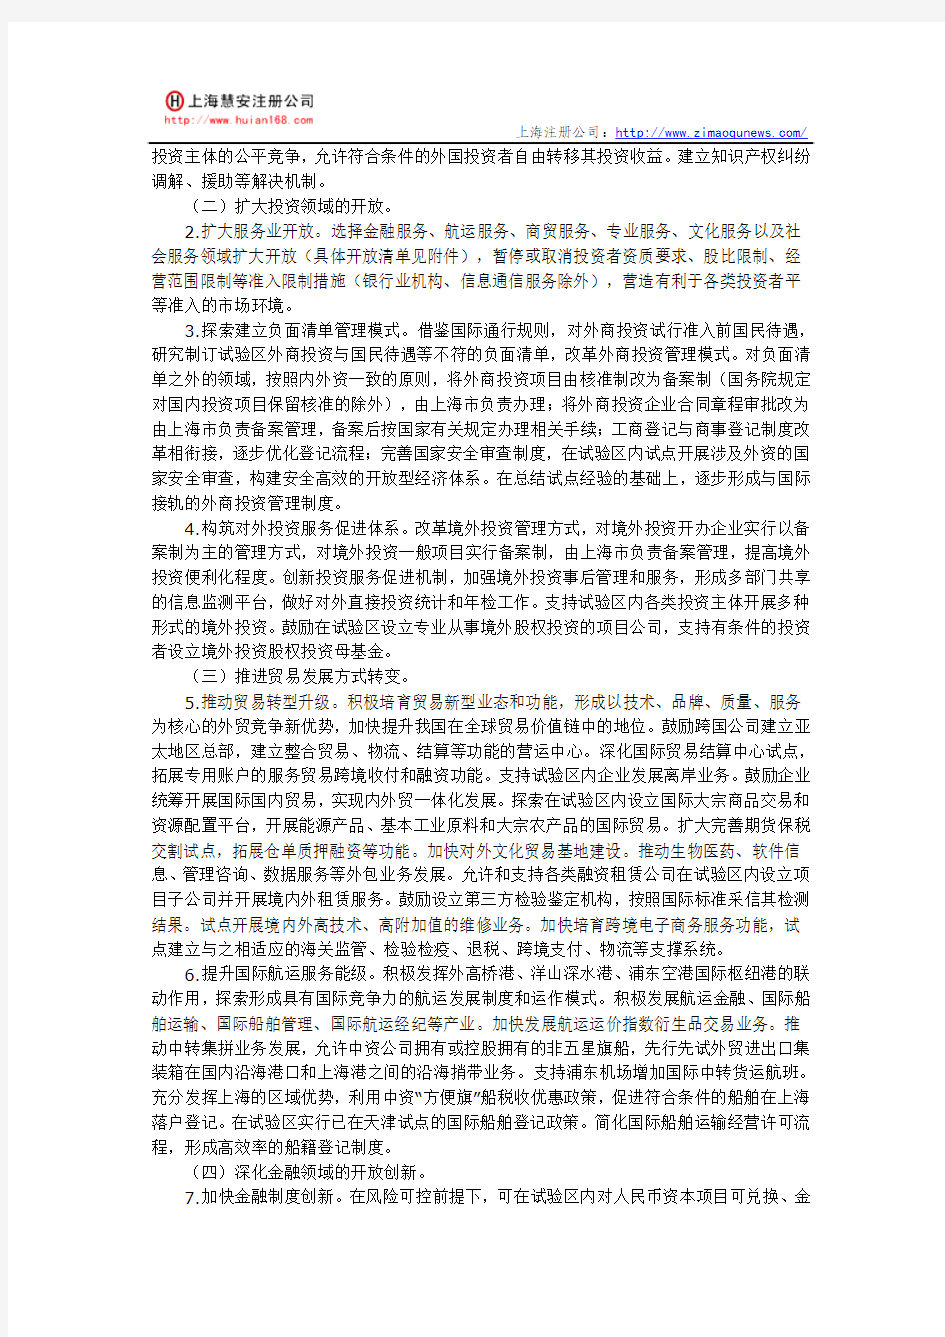 上海自贸区注册公司优惠政策